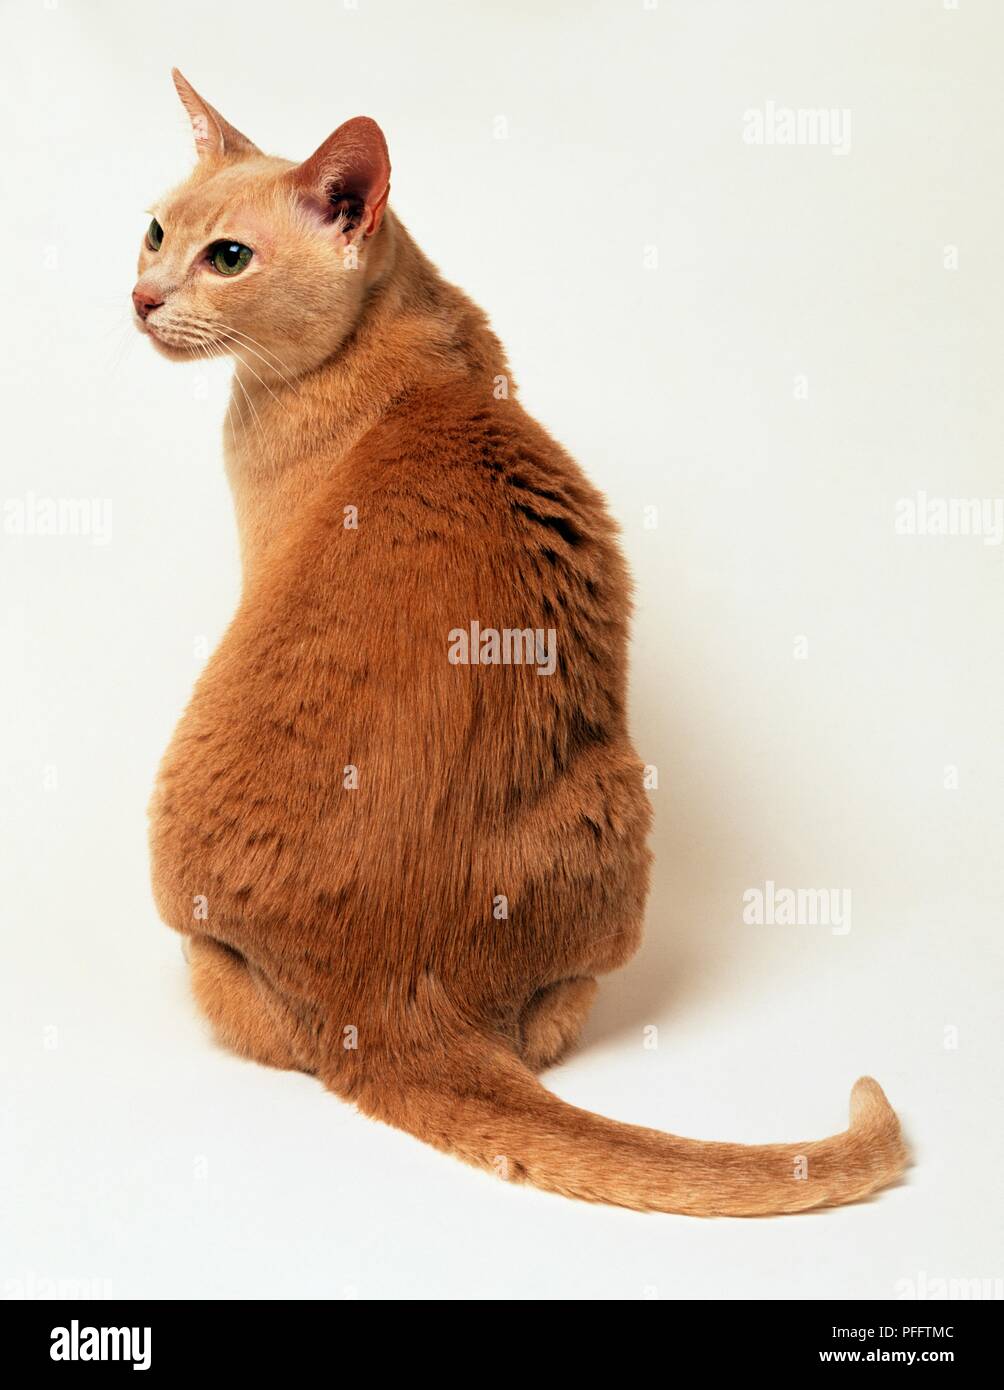 Le gingembre cat sitting, vue arrière Banque D'Images